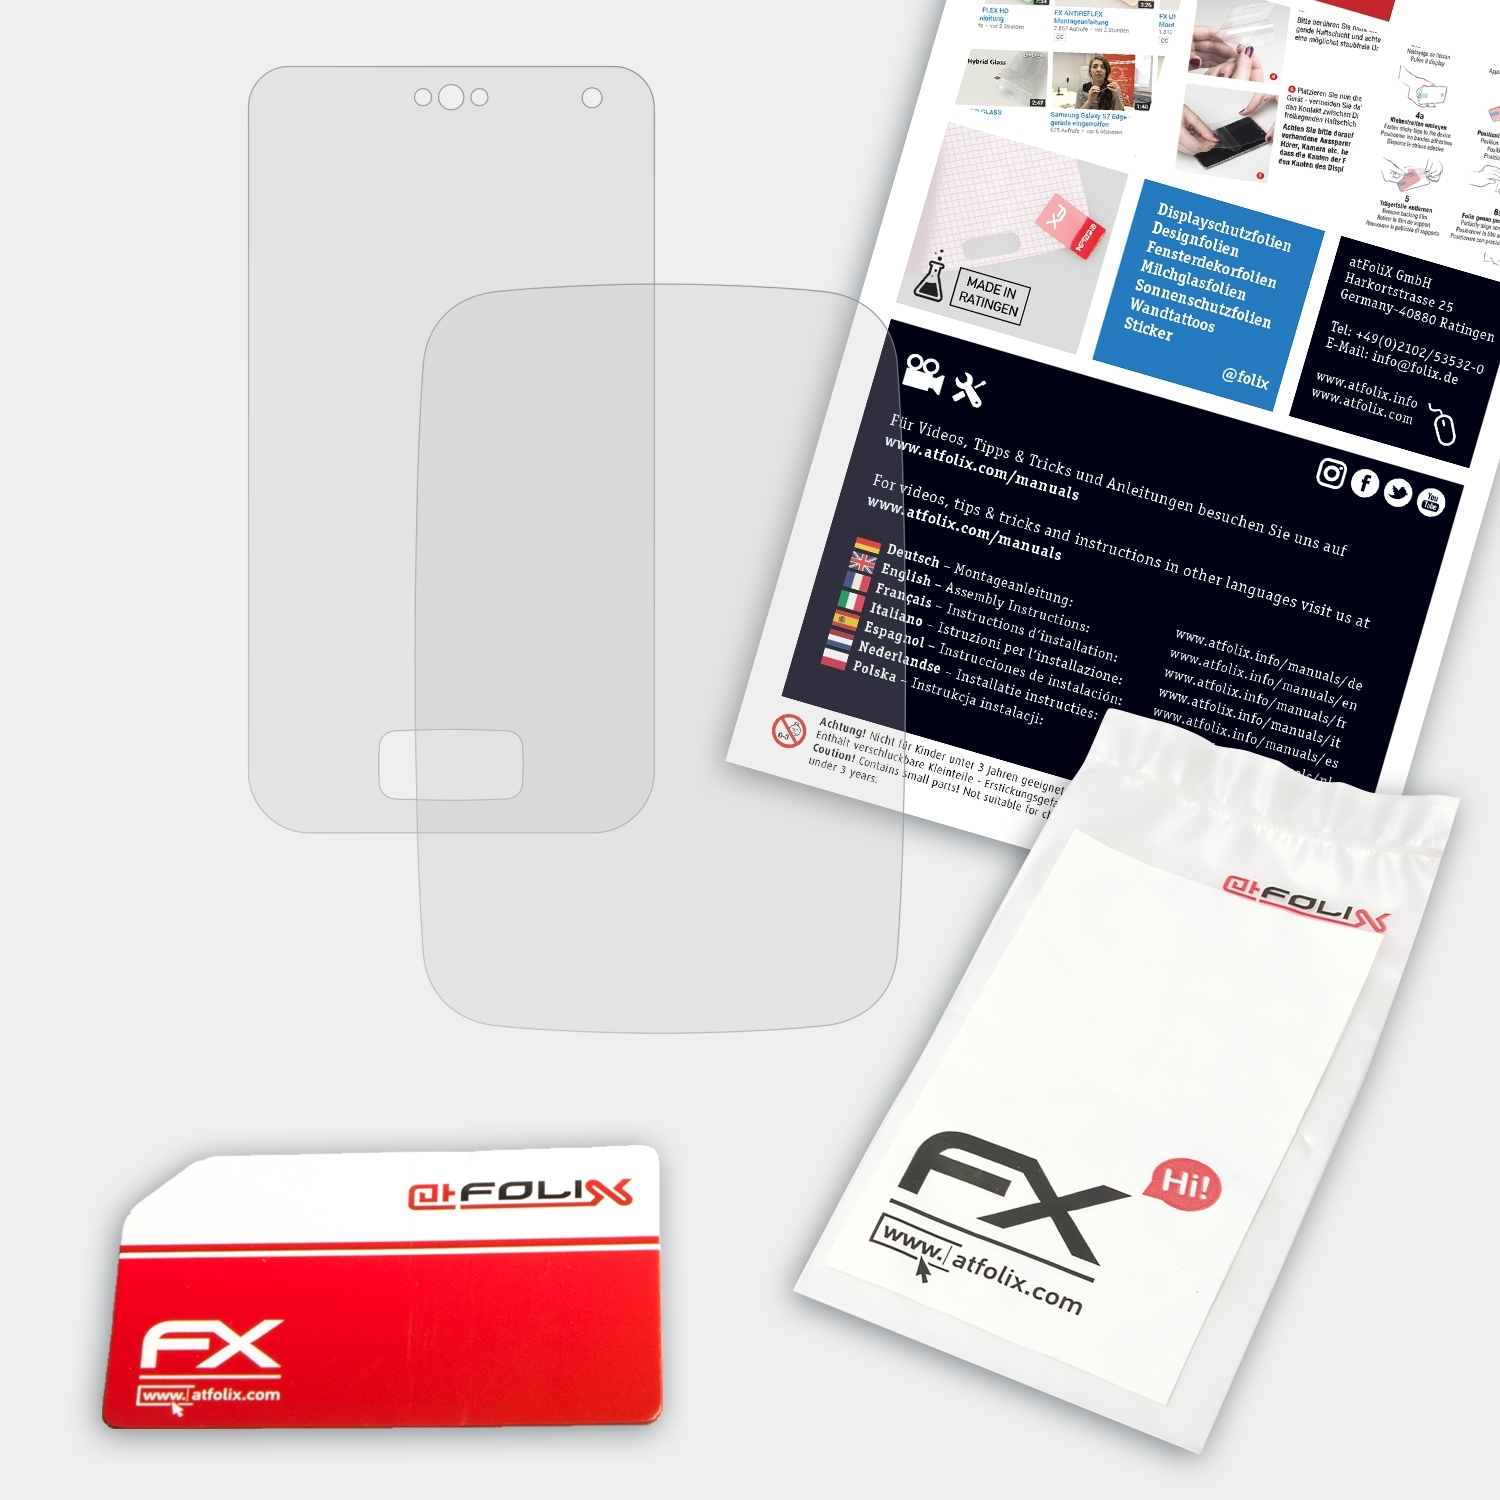 KX-PRX120) Schutzglas(für FX-Hybrid-Glass ATFOLIX Panasonic